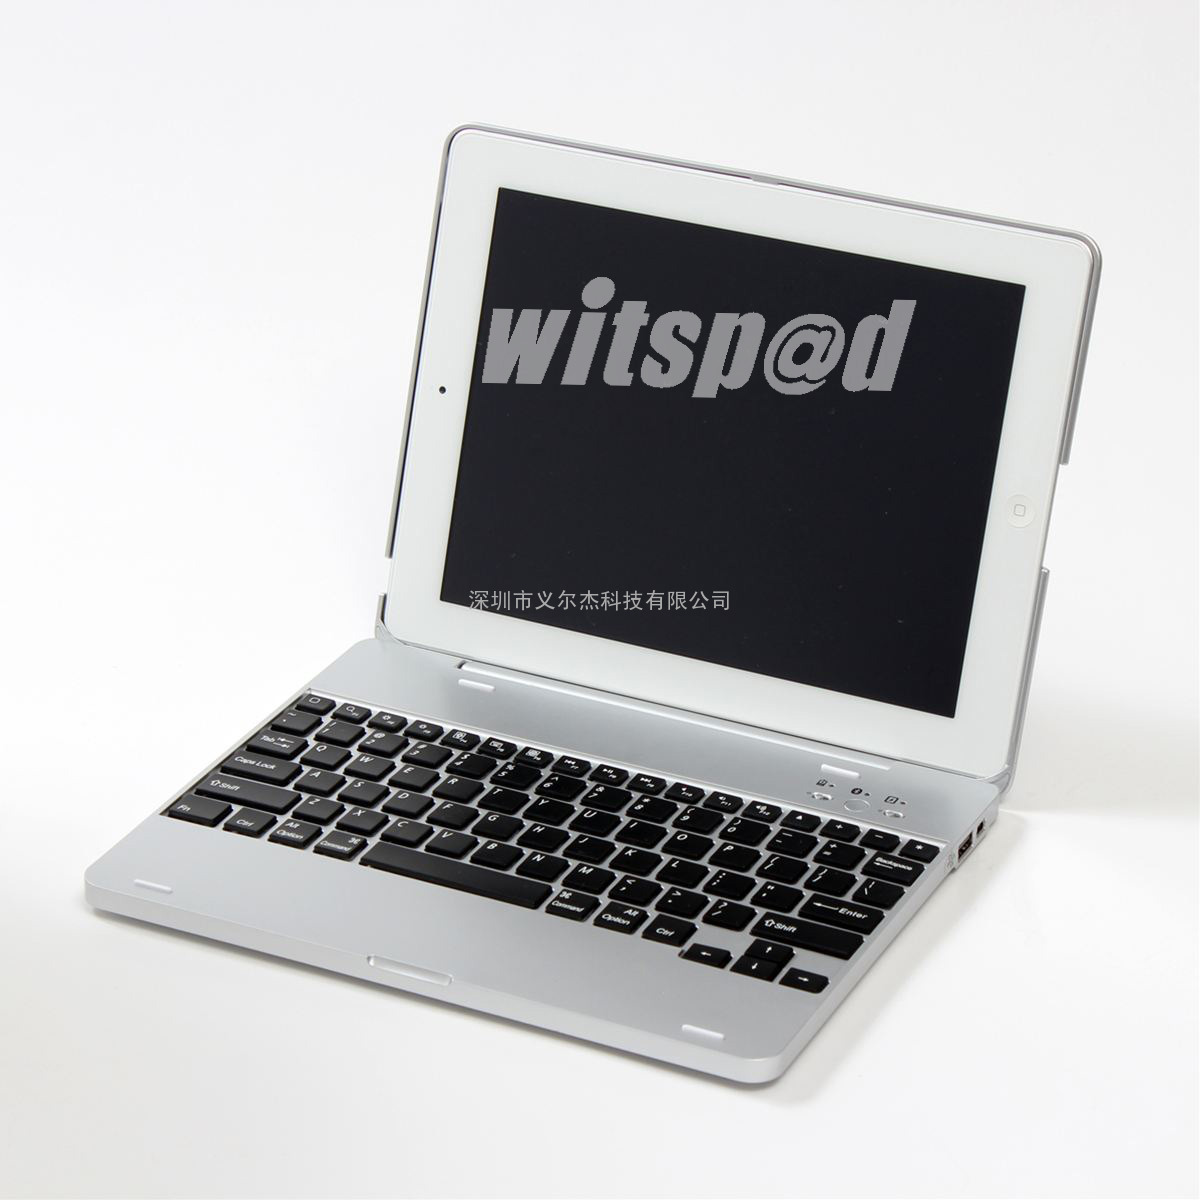 witspad品牌蓝牙键盘 ipad2蓝牙键盘 无线蓝牙键盘 KM2